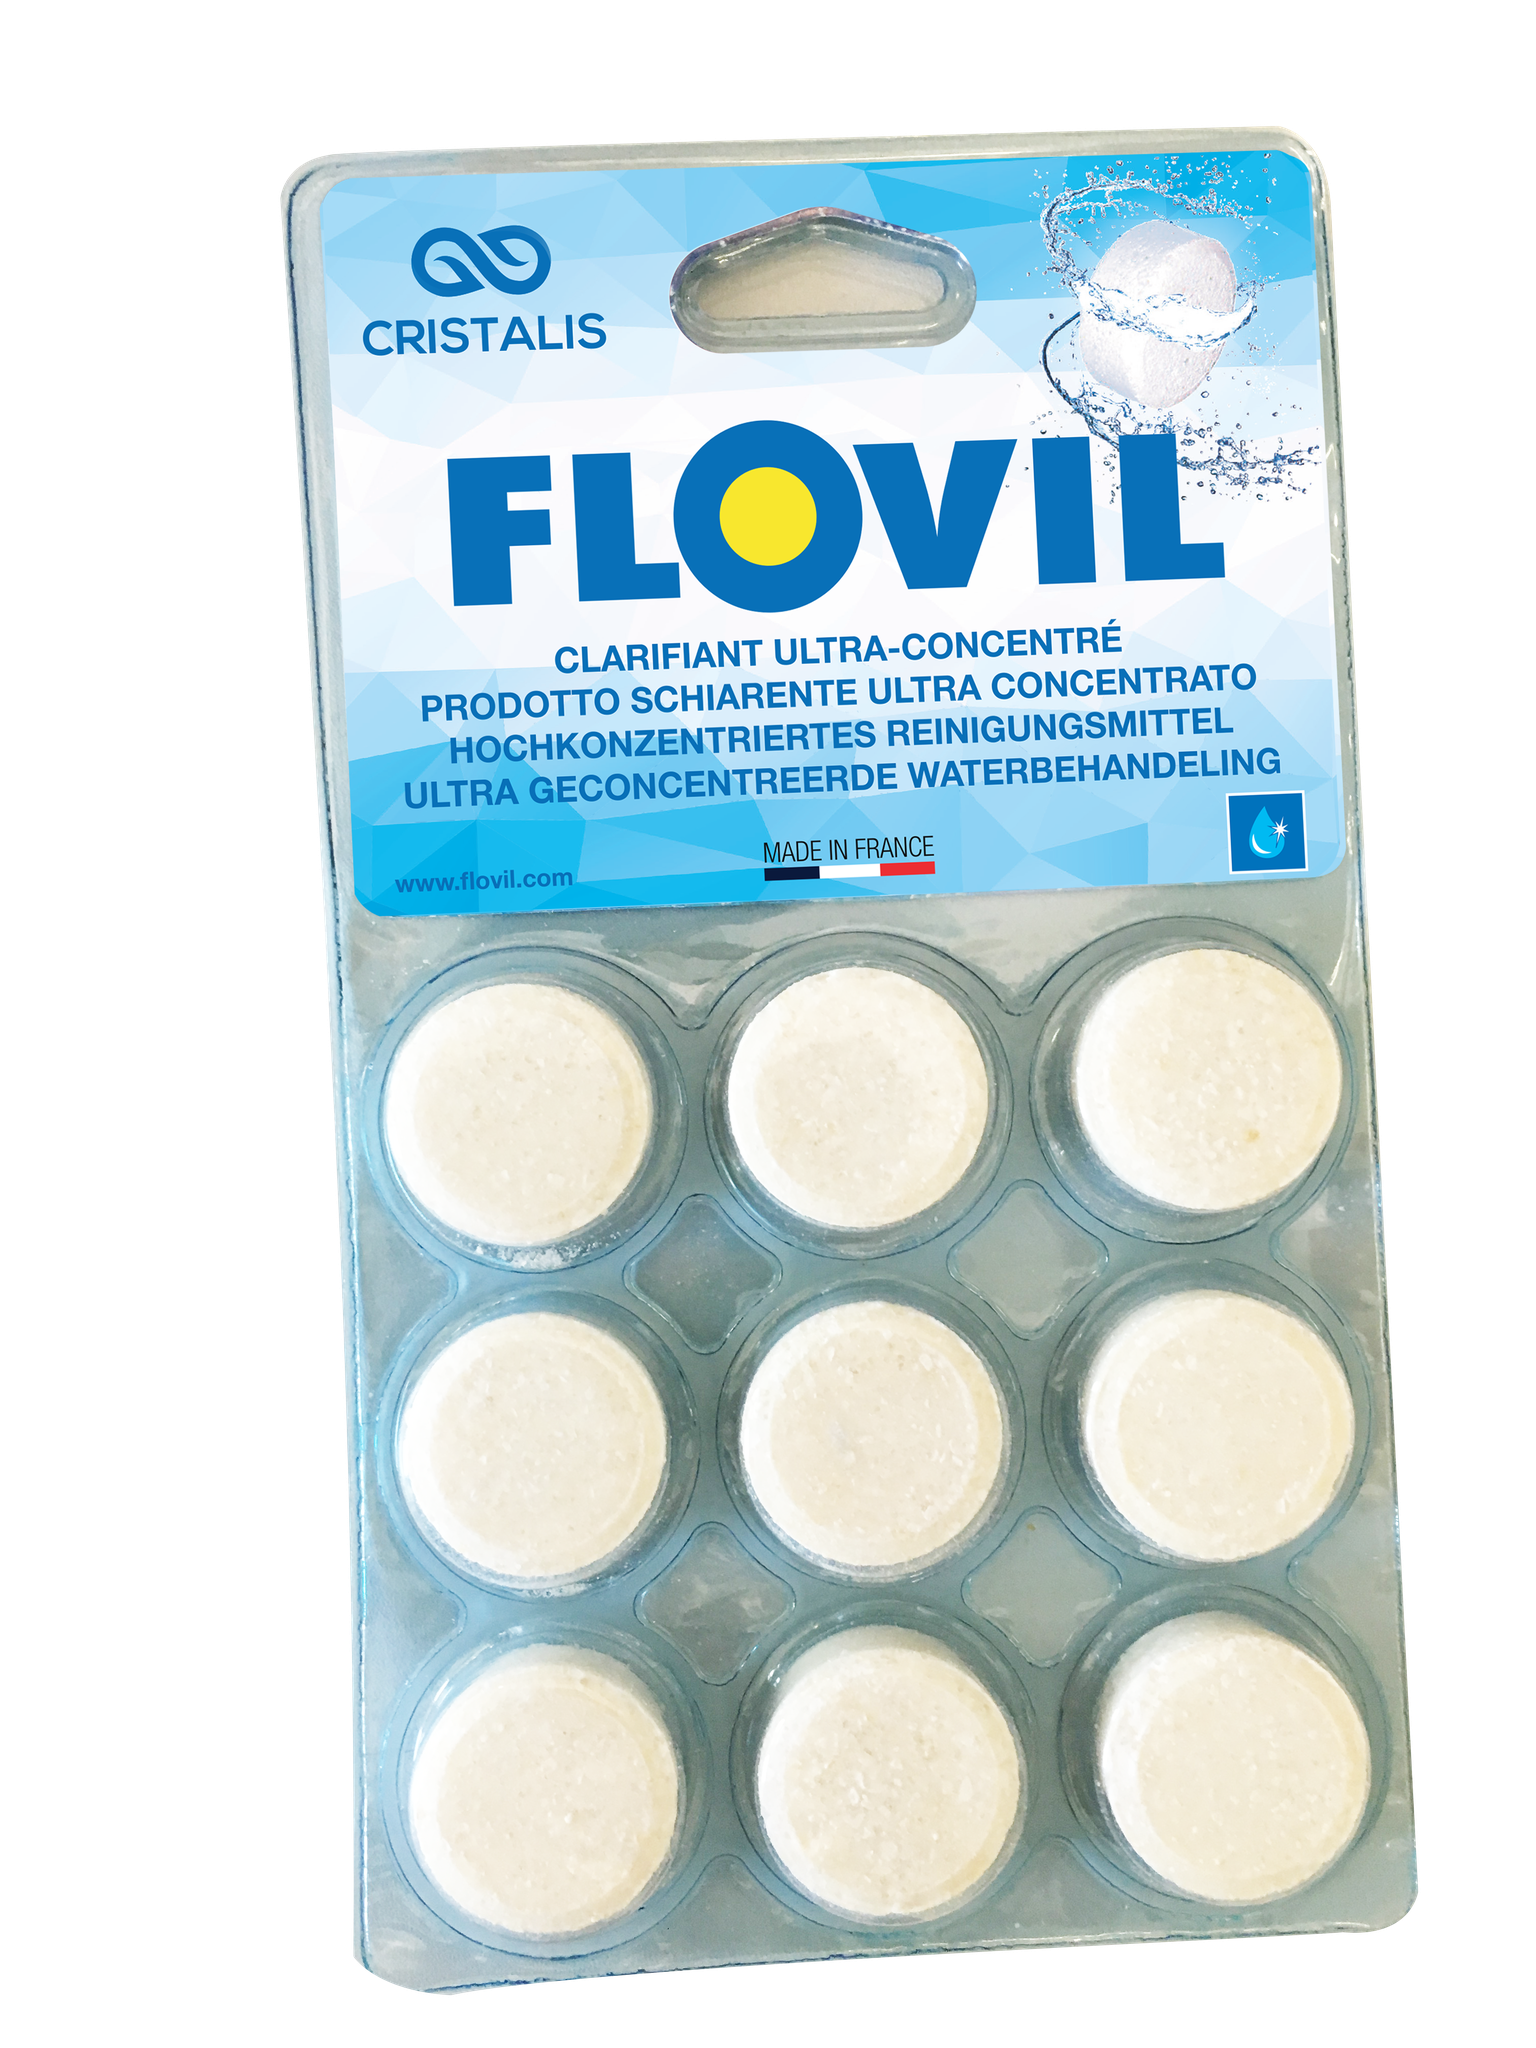 Les pastilles Flovil pour une eau transparente et limpide